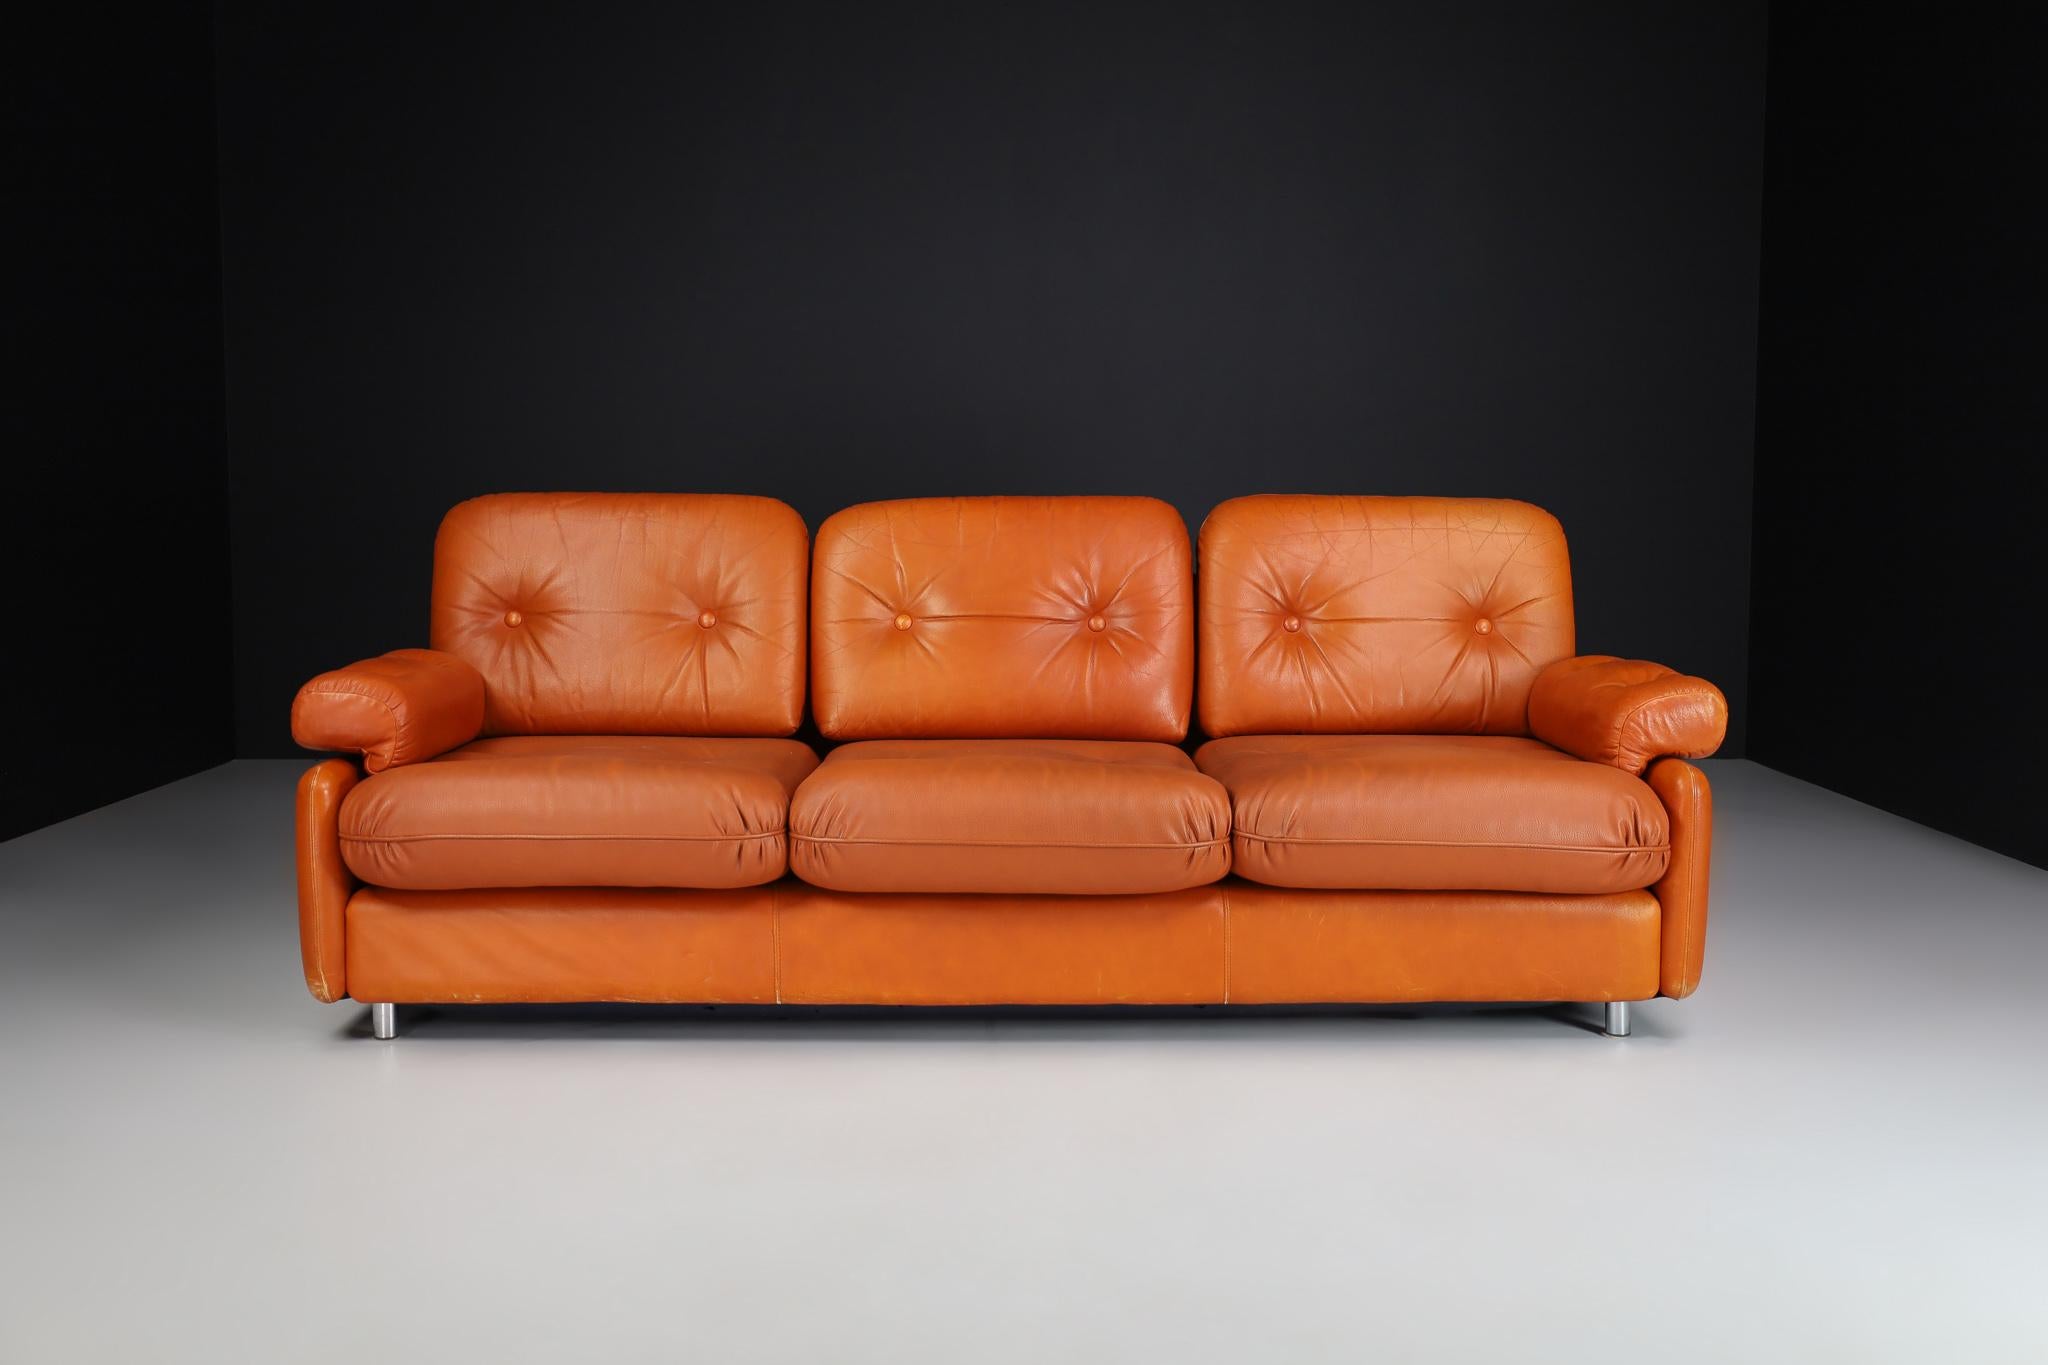 Mid-Century Modern Leder Dreisitzer Lounge Sofa, Deutschland 1960er

Modernes Ledersofa mit drei Sitzen aus der Mitte des Jahrhunderts, hergestellt und entworfen in Deutschland in den 1960er Jahren. Es ist in einem schönen Vintage-Zustand, mit